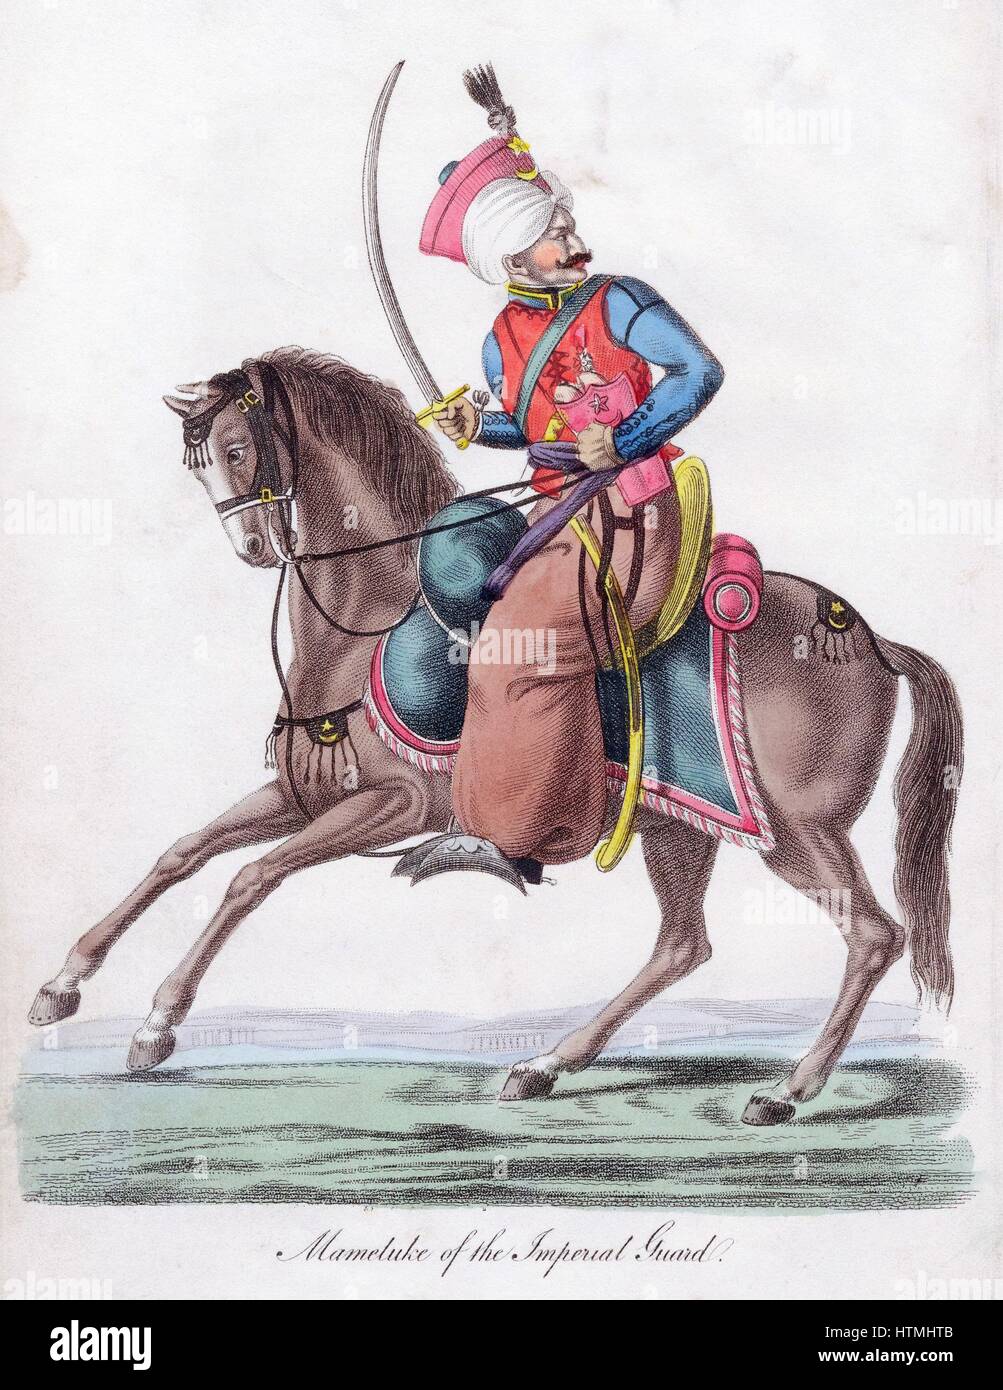 Mameluco (Mameluke) de la Guardia Imperial otomano. Cuando Napoleón invadió Egipto era los mamelucos que lucharon contra él. Mamelucos perdió el poder en la matanza de 1811, instigada por Muhammad Ali Pasha (1769-1849) Aguatinta c1820 Foto de stock